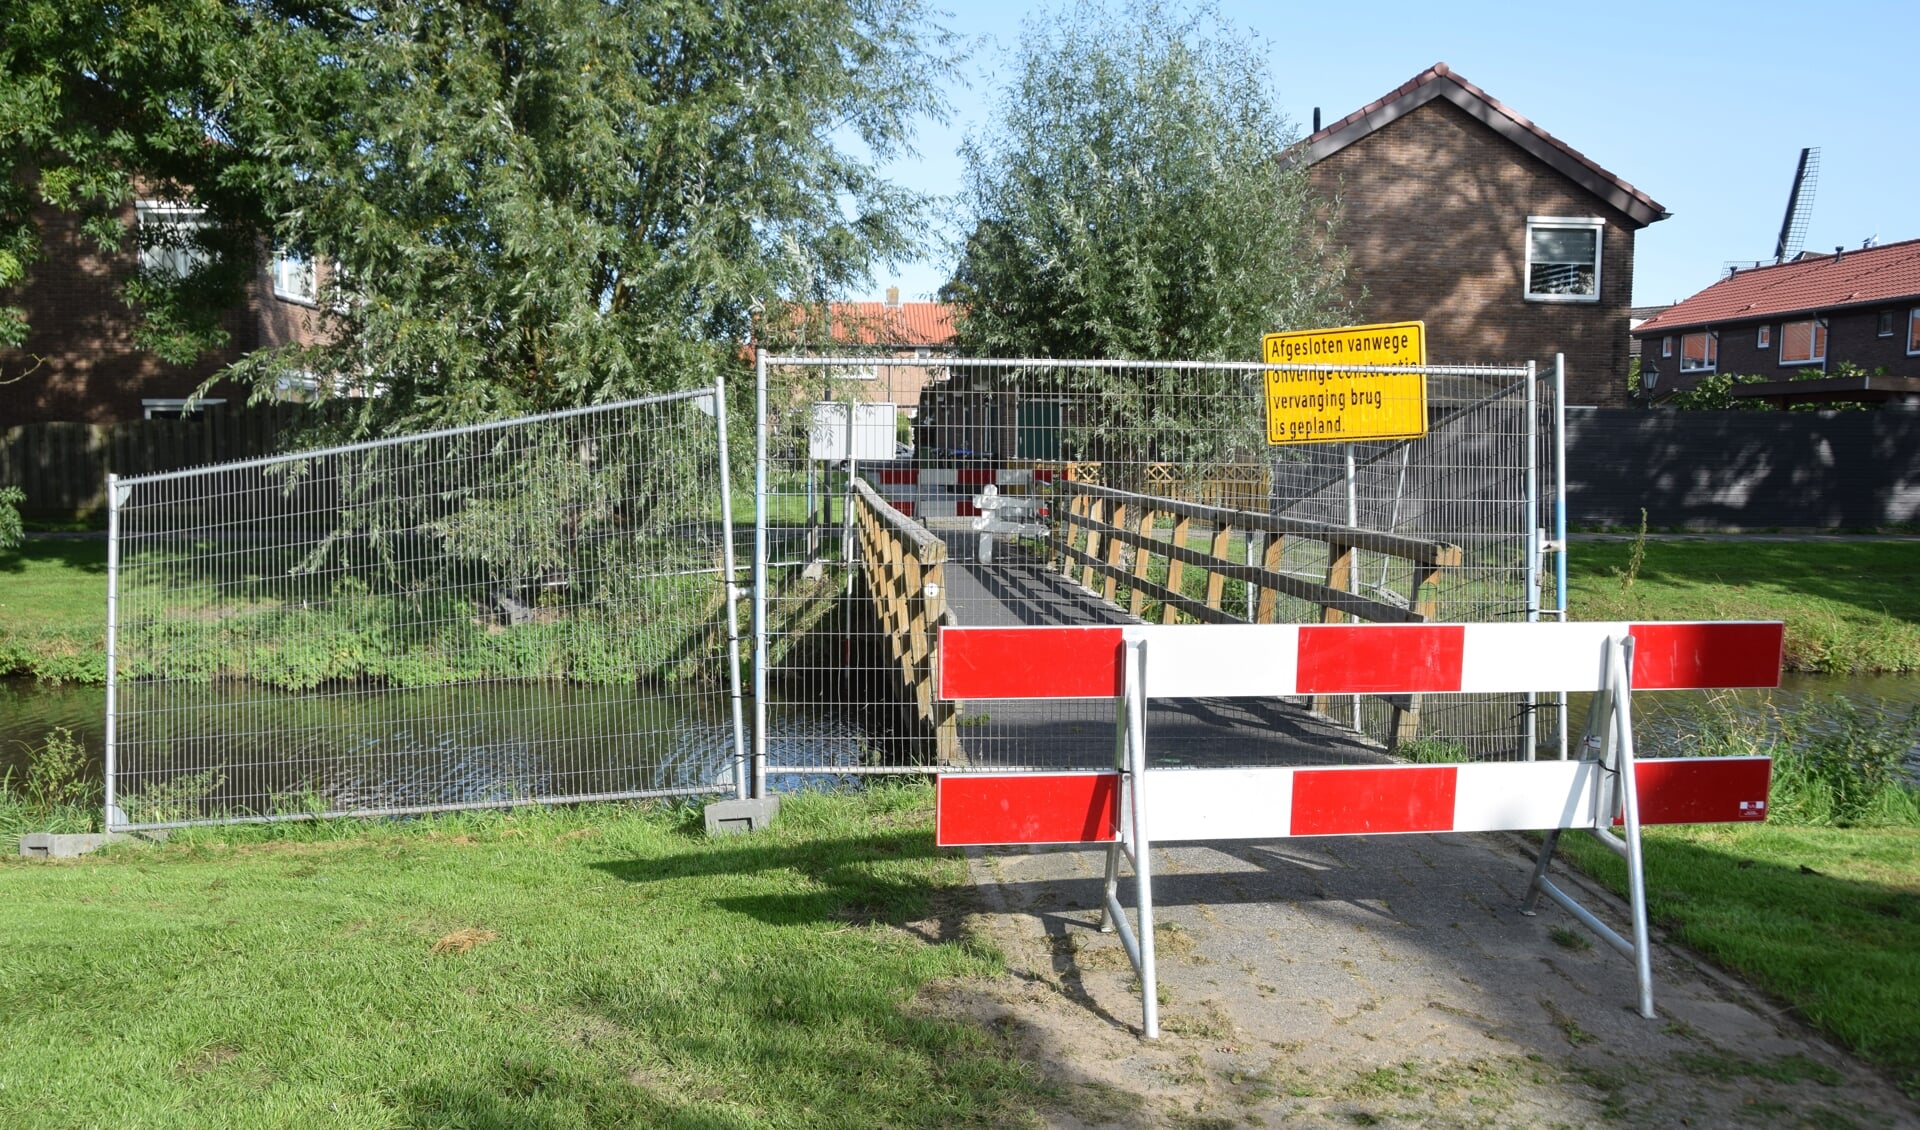 Momenteel is de brug bij het Diepenbroickpark afgesloten, maar de hekken zijn niet muurvast verankerd.